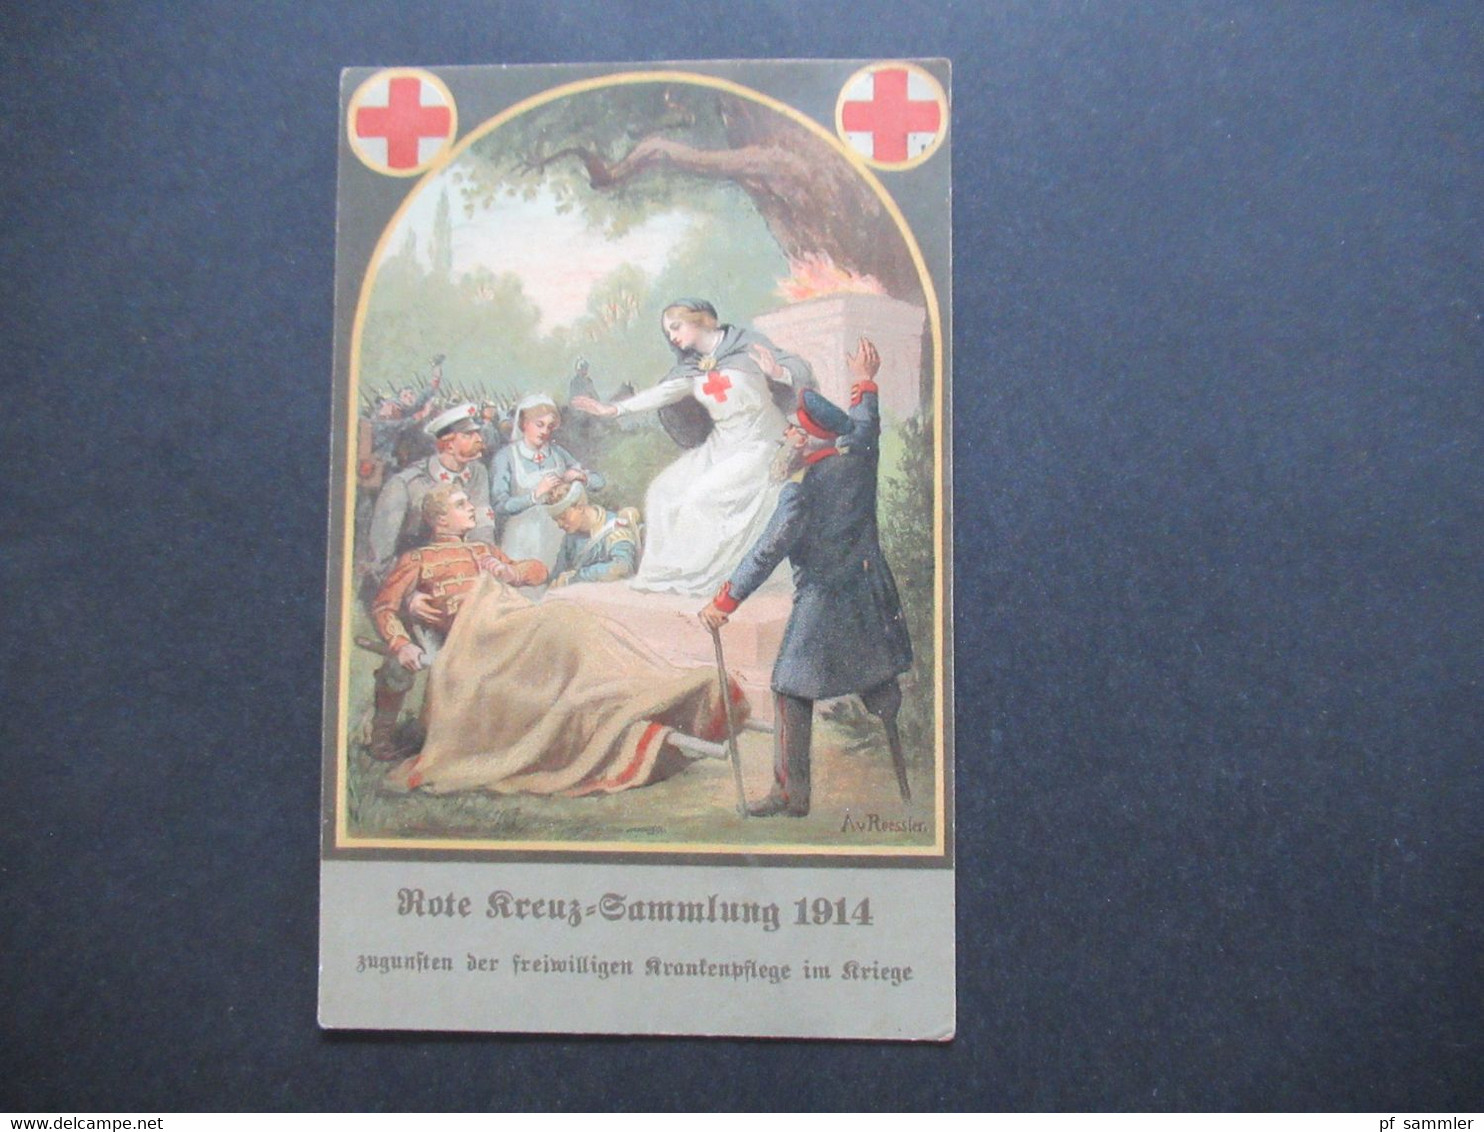 DR 1914 AK Rote Kreuz Sammlung 1914 Zugunsten Der Freiwilligen Krankenpflege Im Kriege Orts Postkarte Detmold - Croix-Rouge